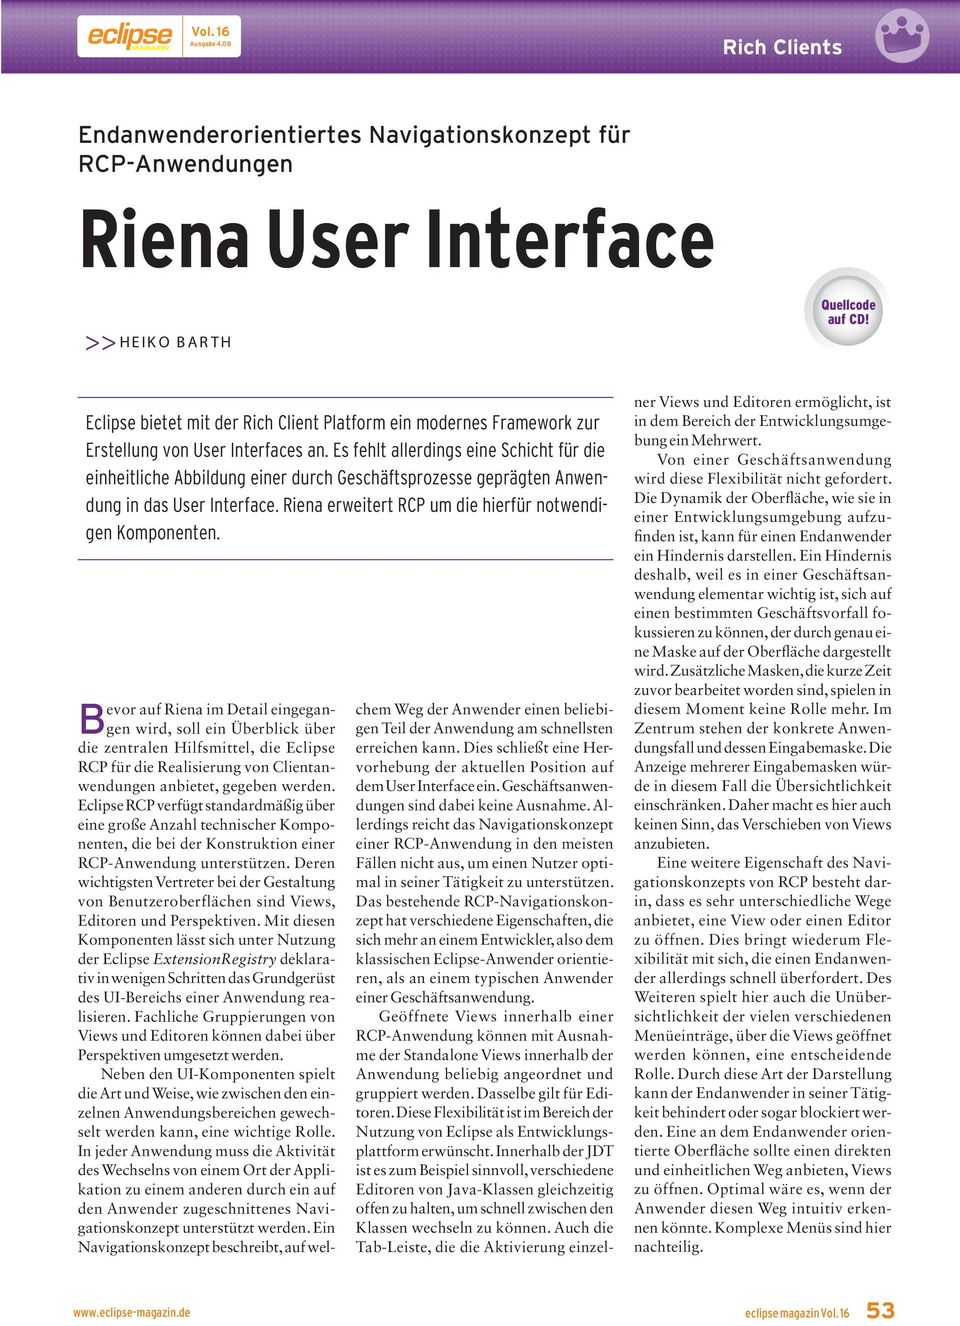 Es fehlt allerdings eine Schicht für die einheitliche Abbildung einer durch Geschäftsprozesse geprägten Anwendung in das User Interface. Riena erweitert RCP um die hierfür notwendigen Komponenten.